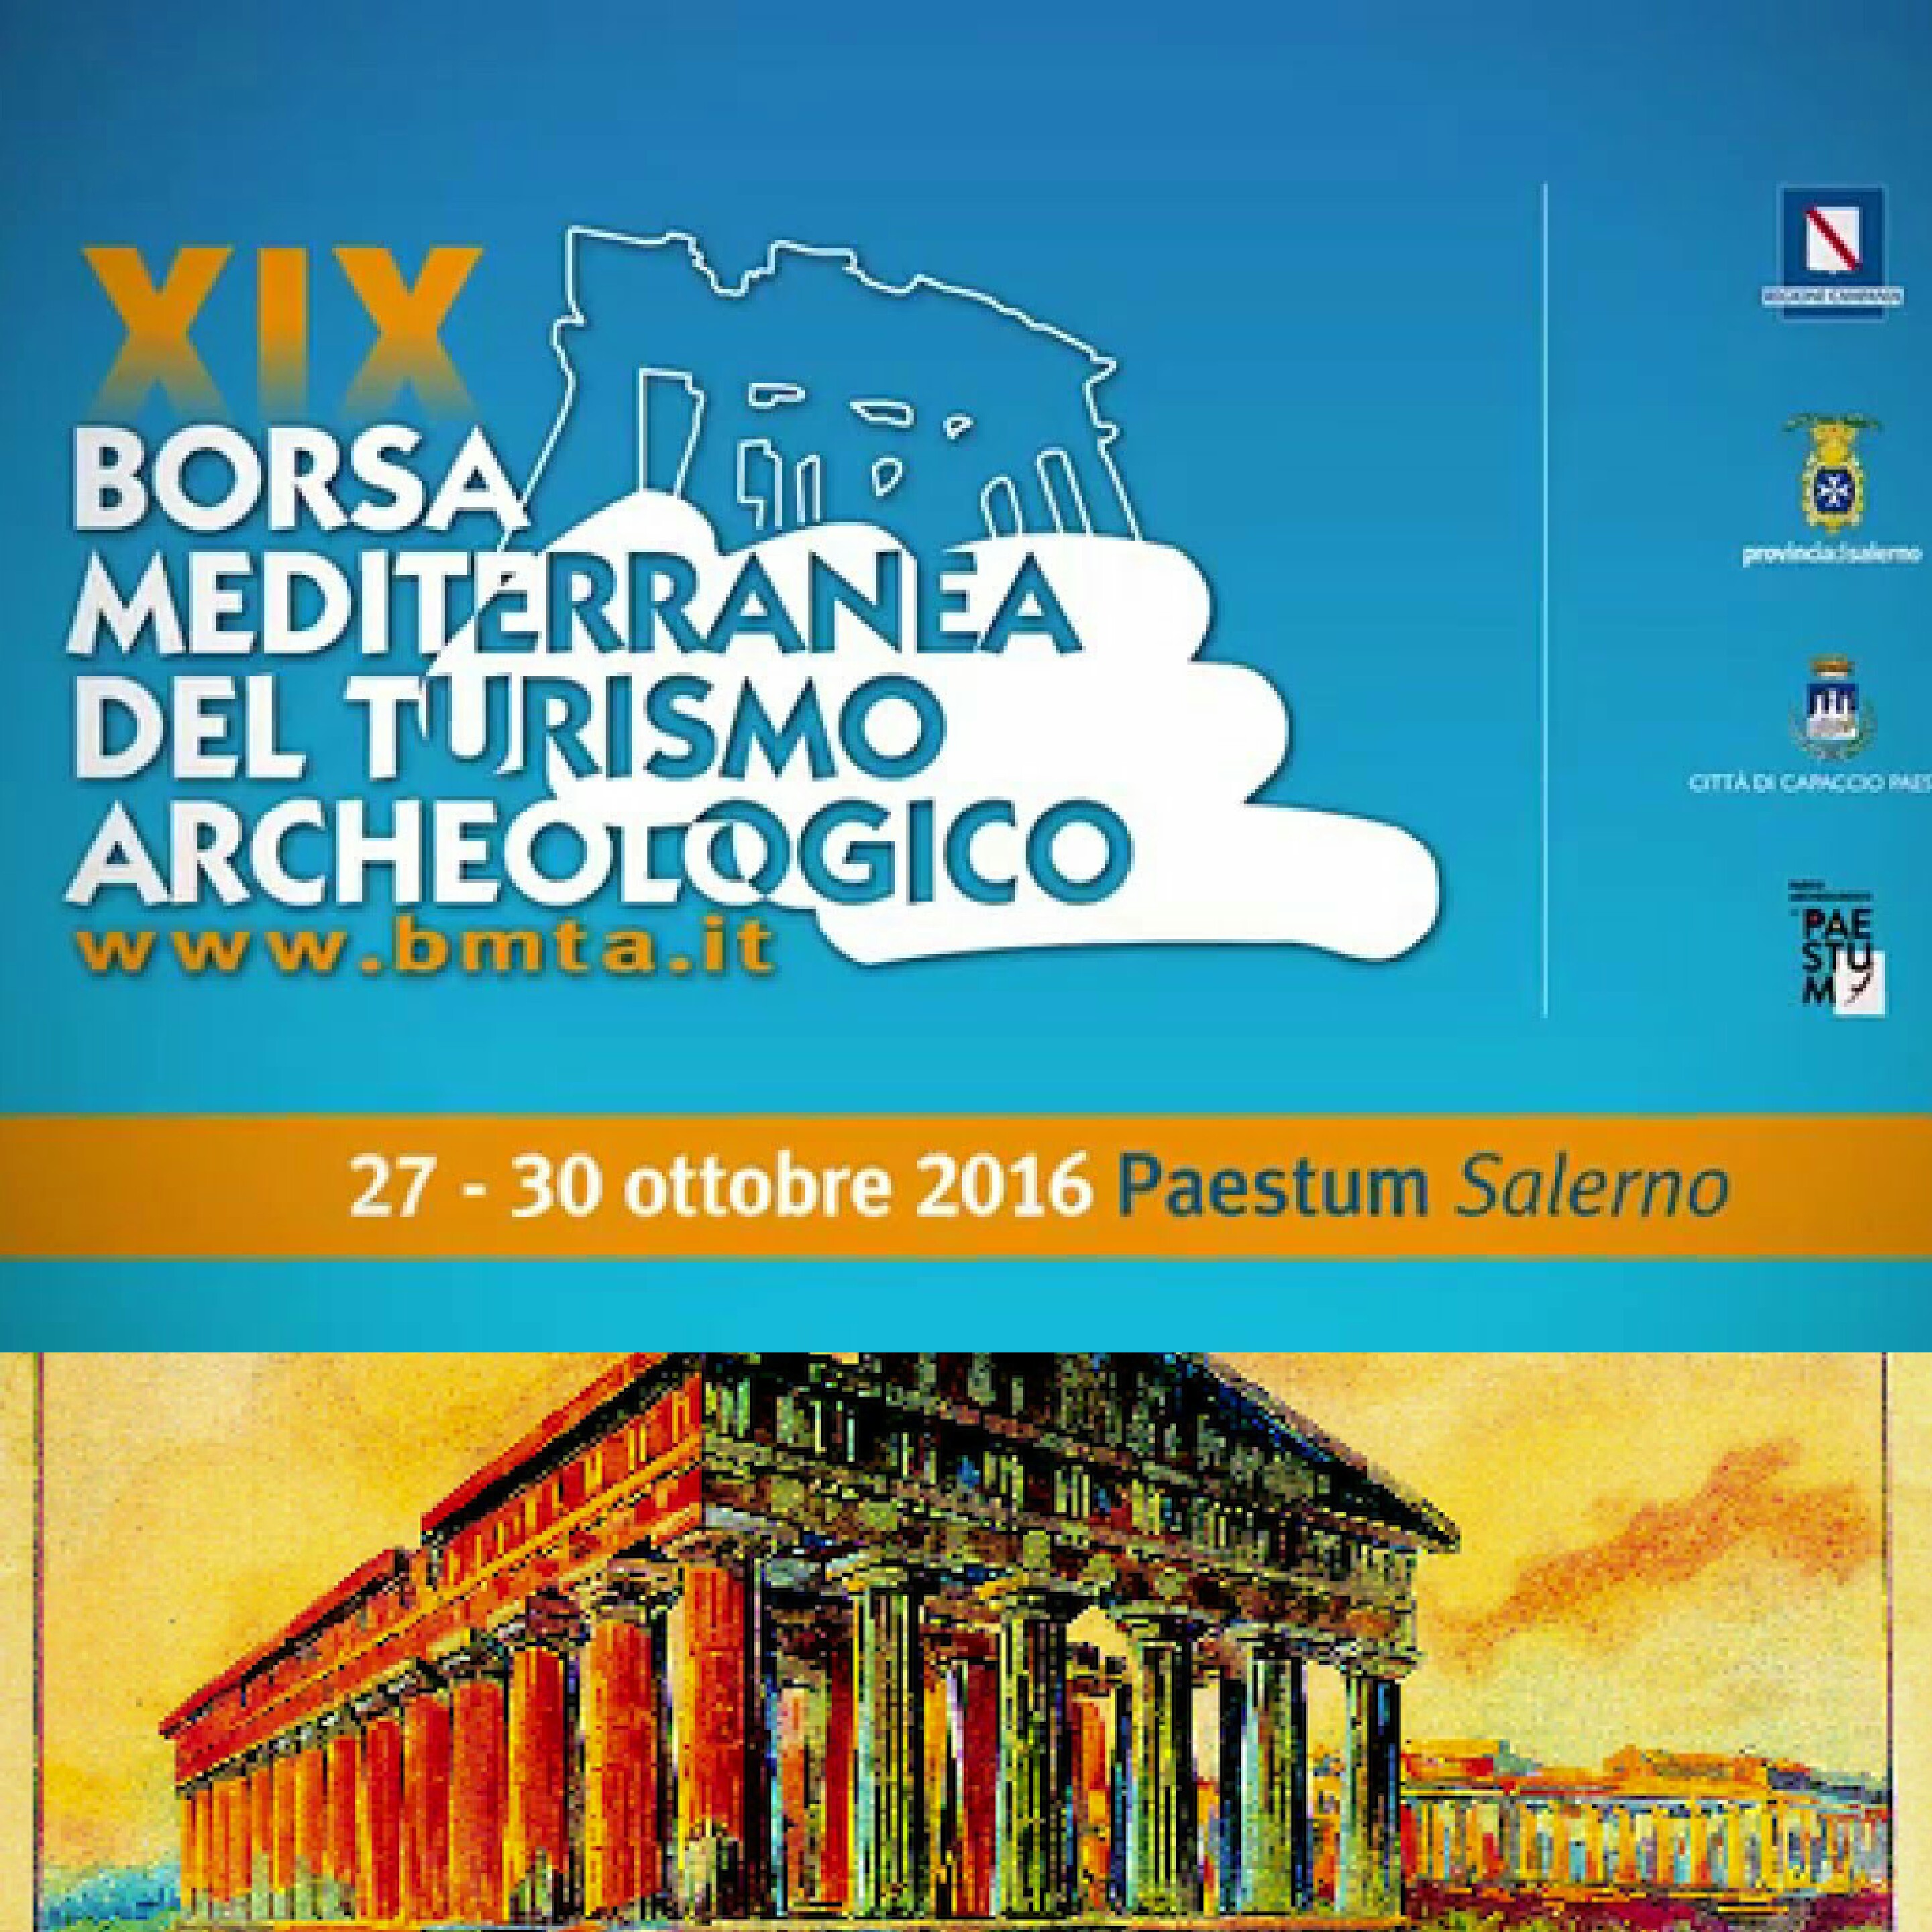 XIX Borsa Mediterrsnea del Turismo Archeologico di Paestum